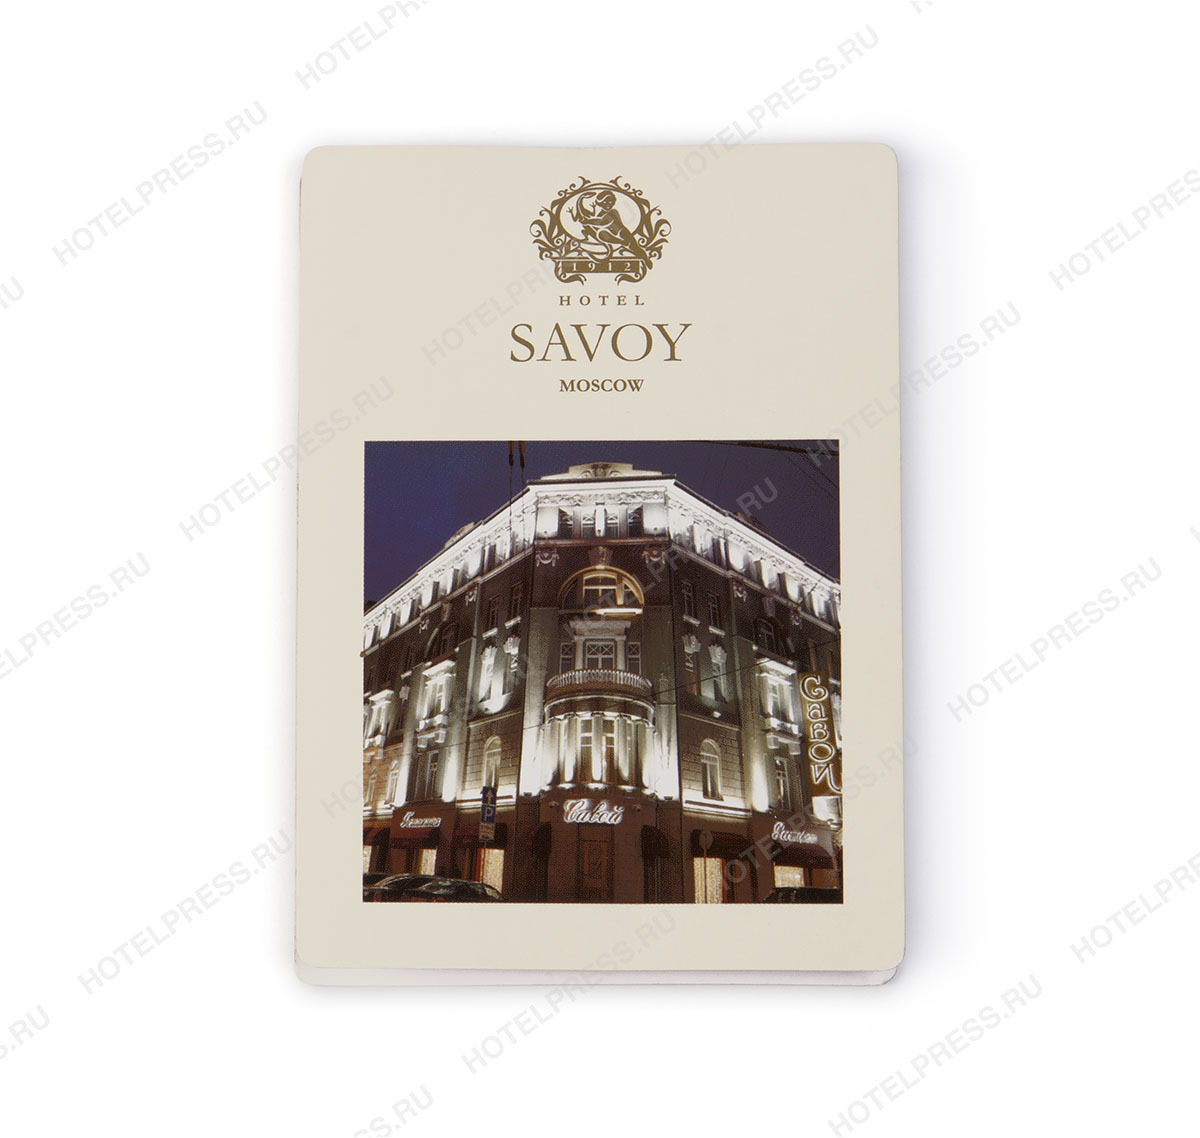 Z-карта гостей, проживающих в отеле SAVOY